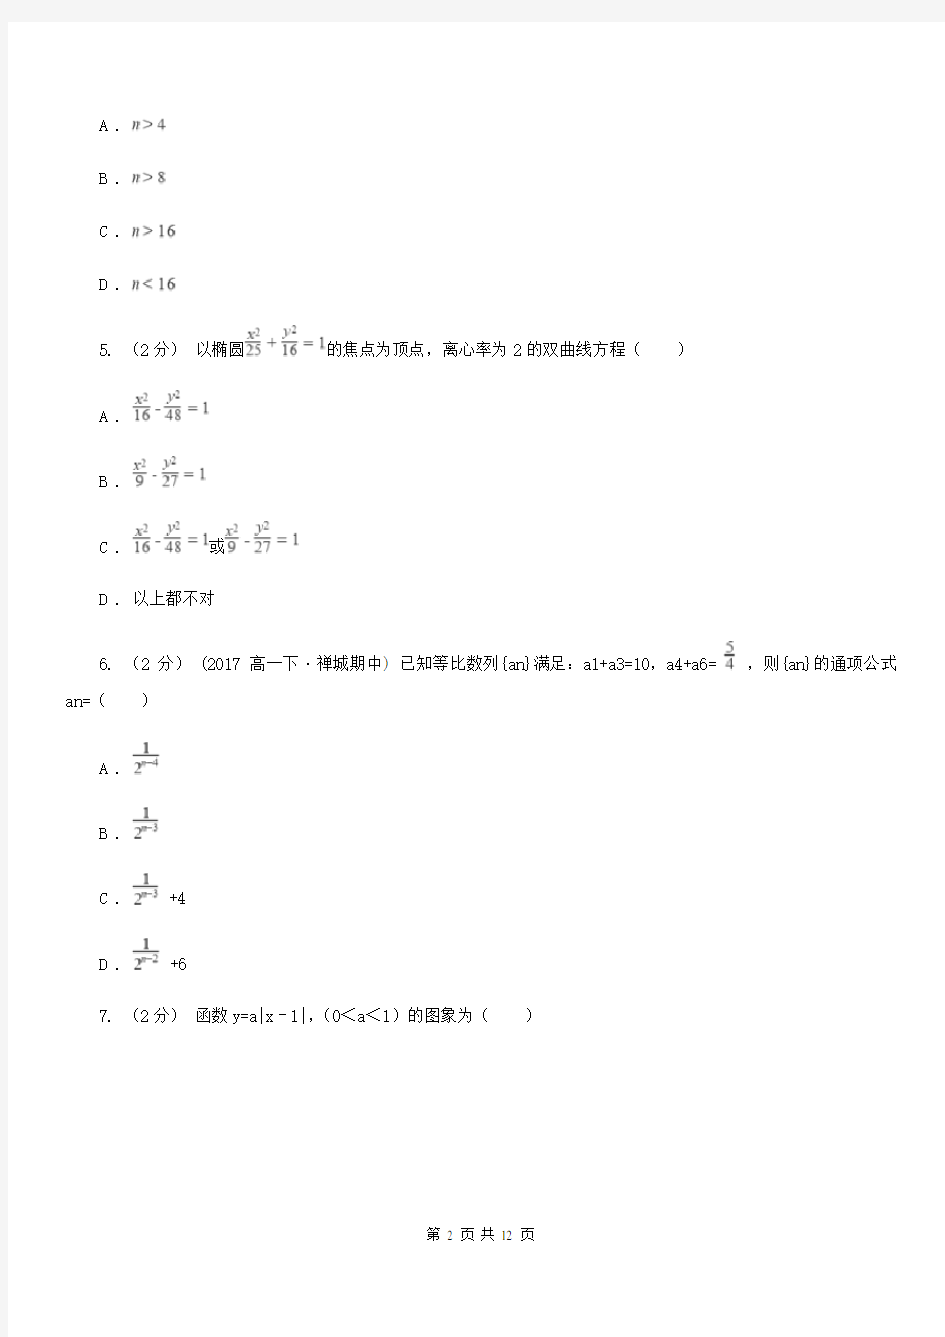 南京市高考数学模拟试卷(理科)D卷